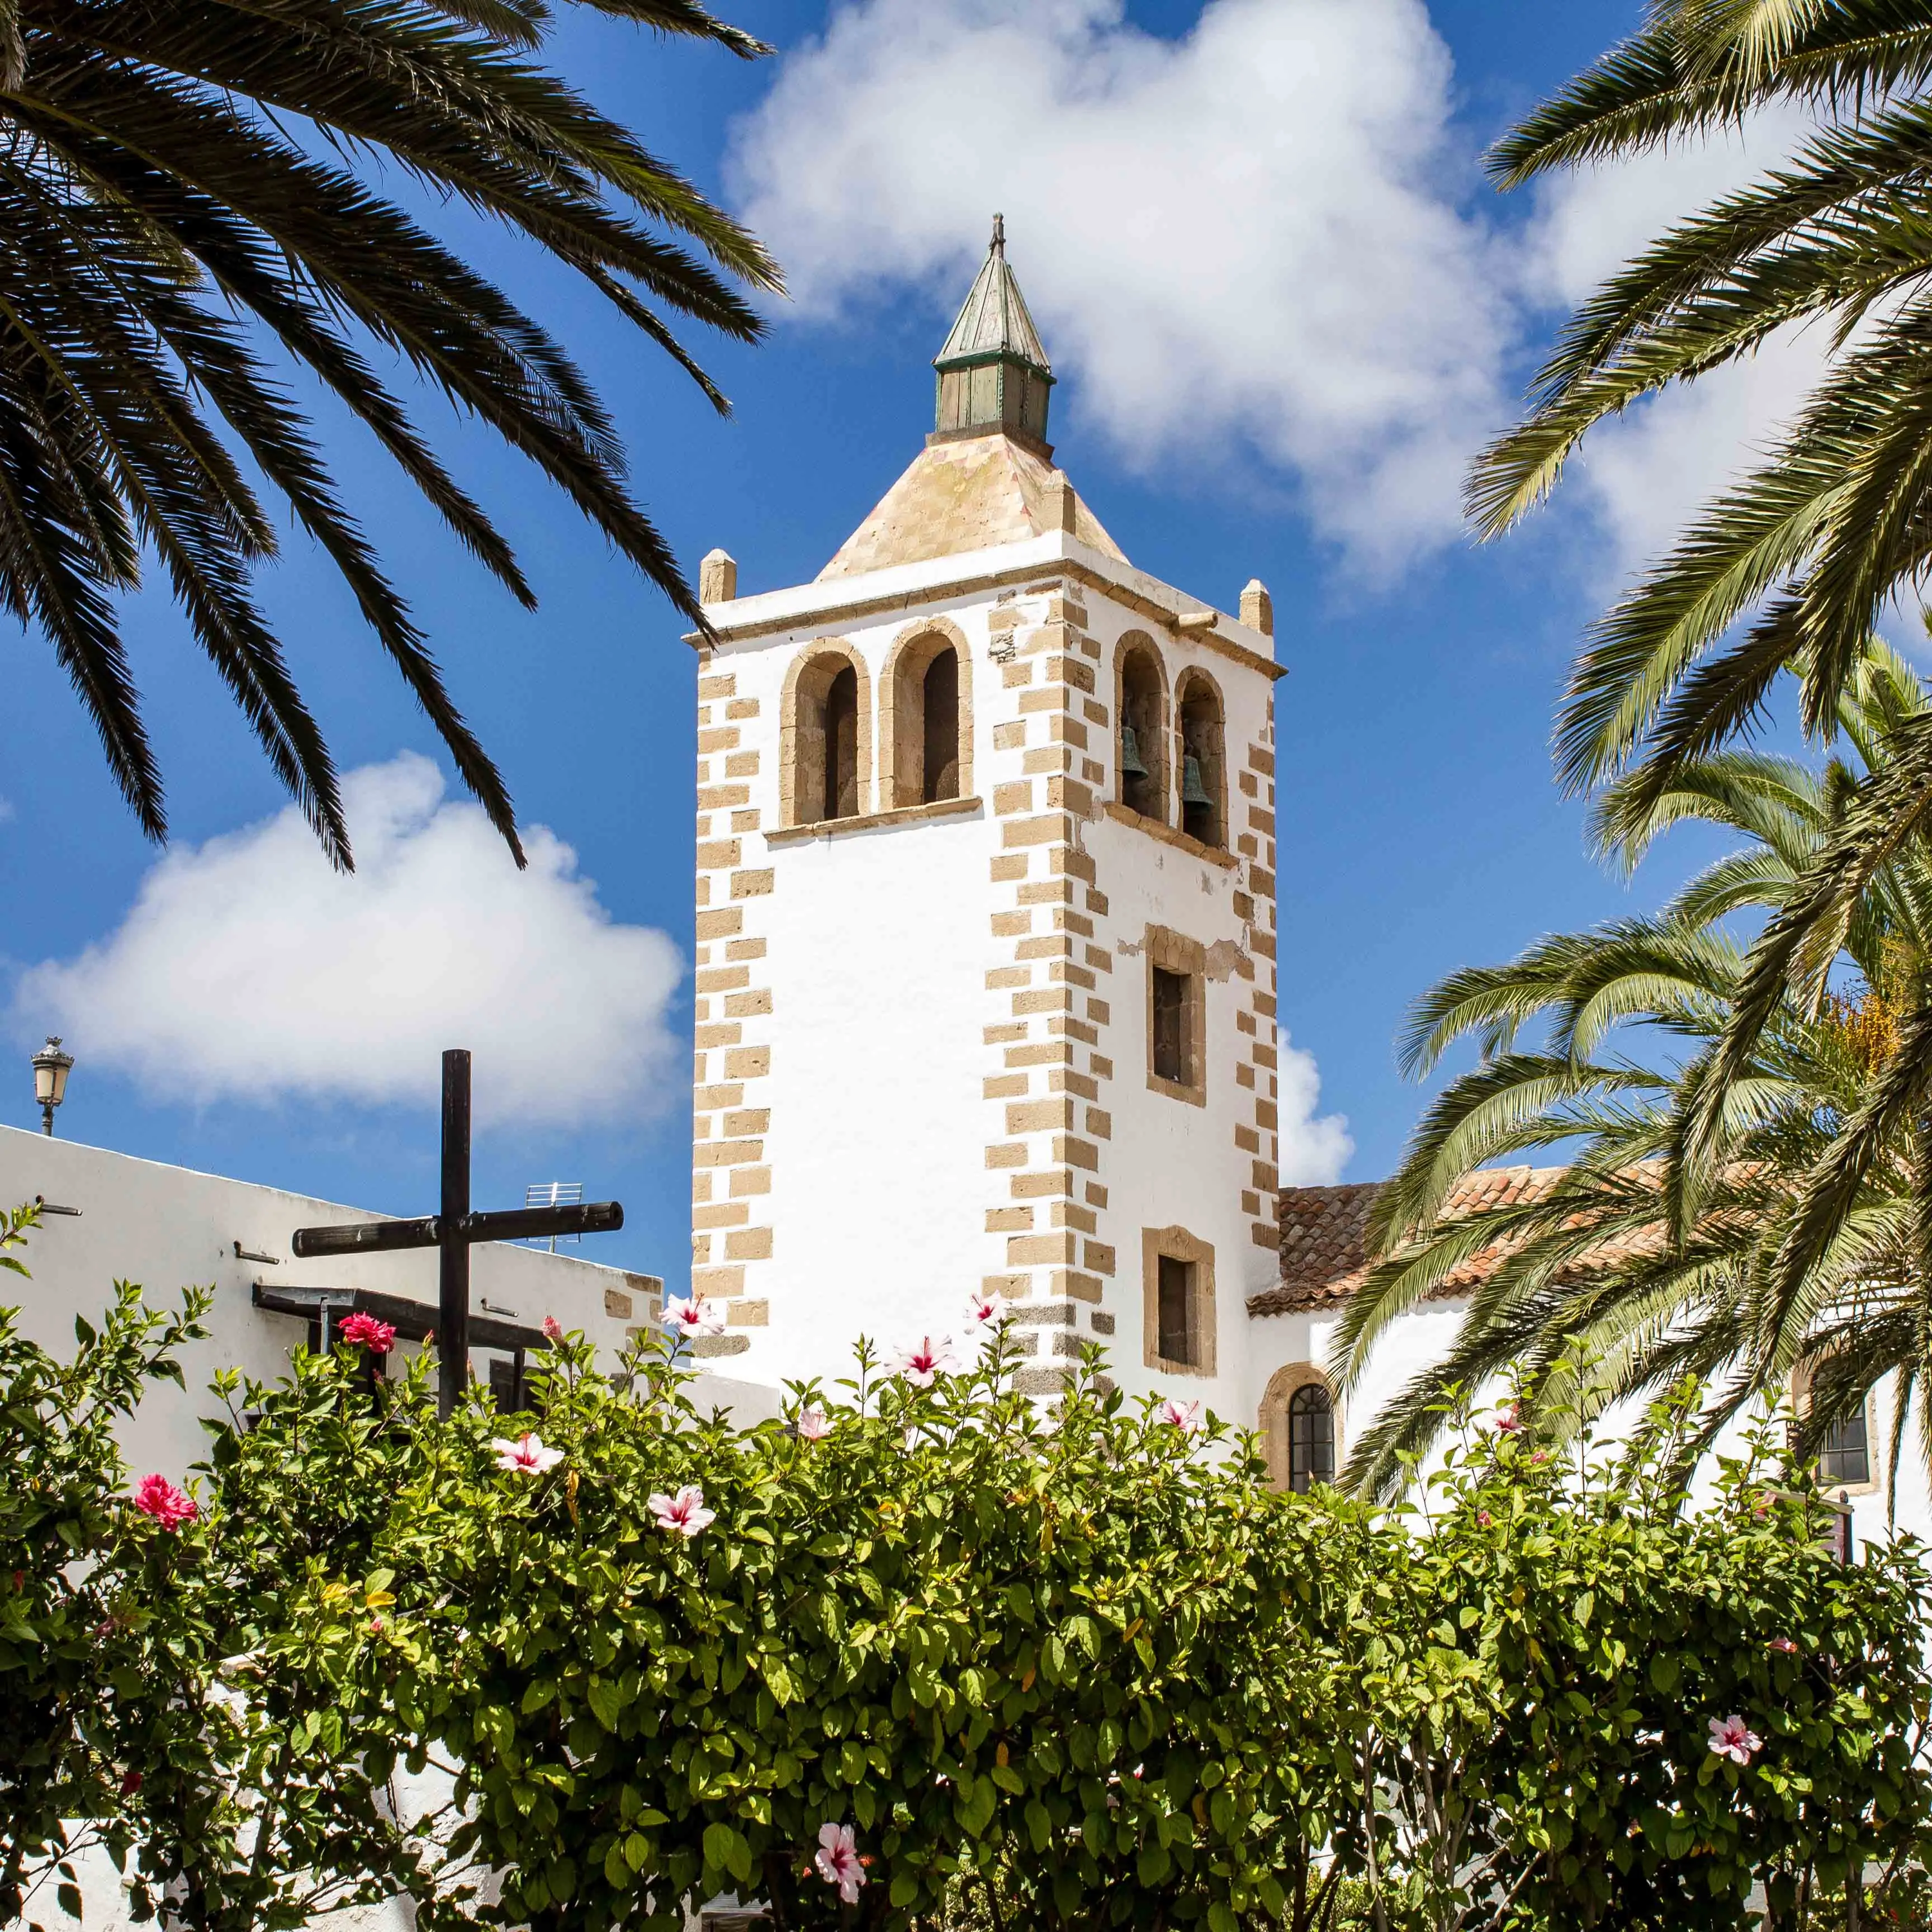 Betancuria, Fuerteventura – A trip up the mountains